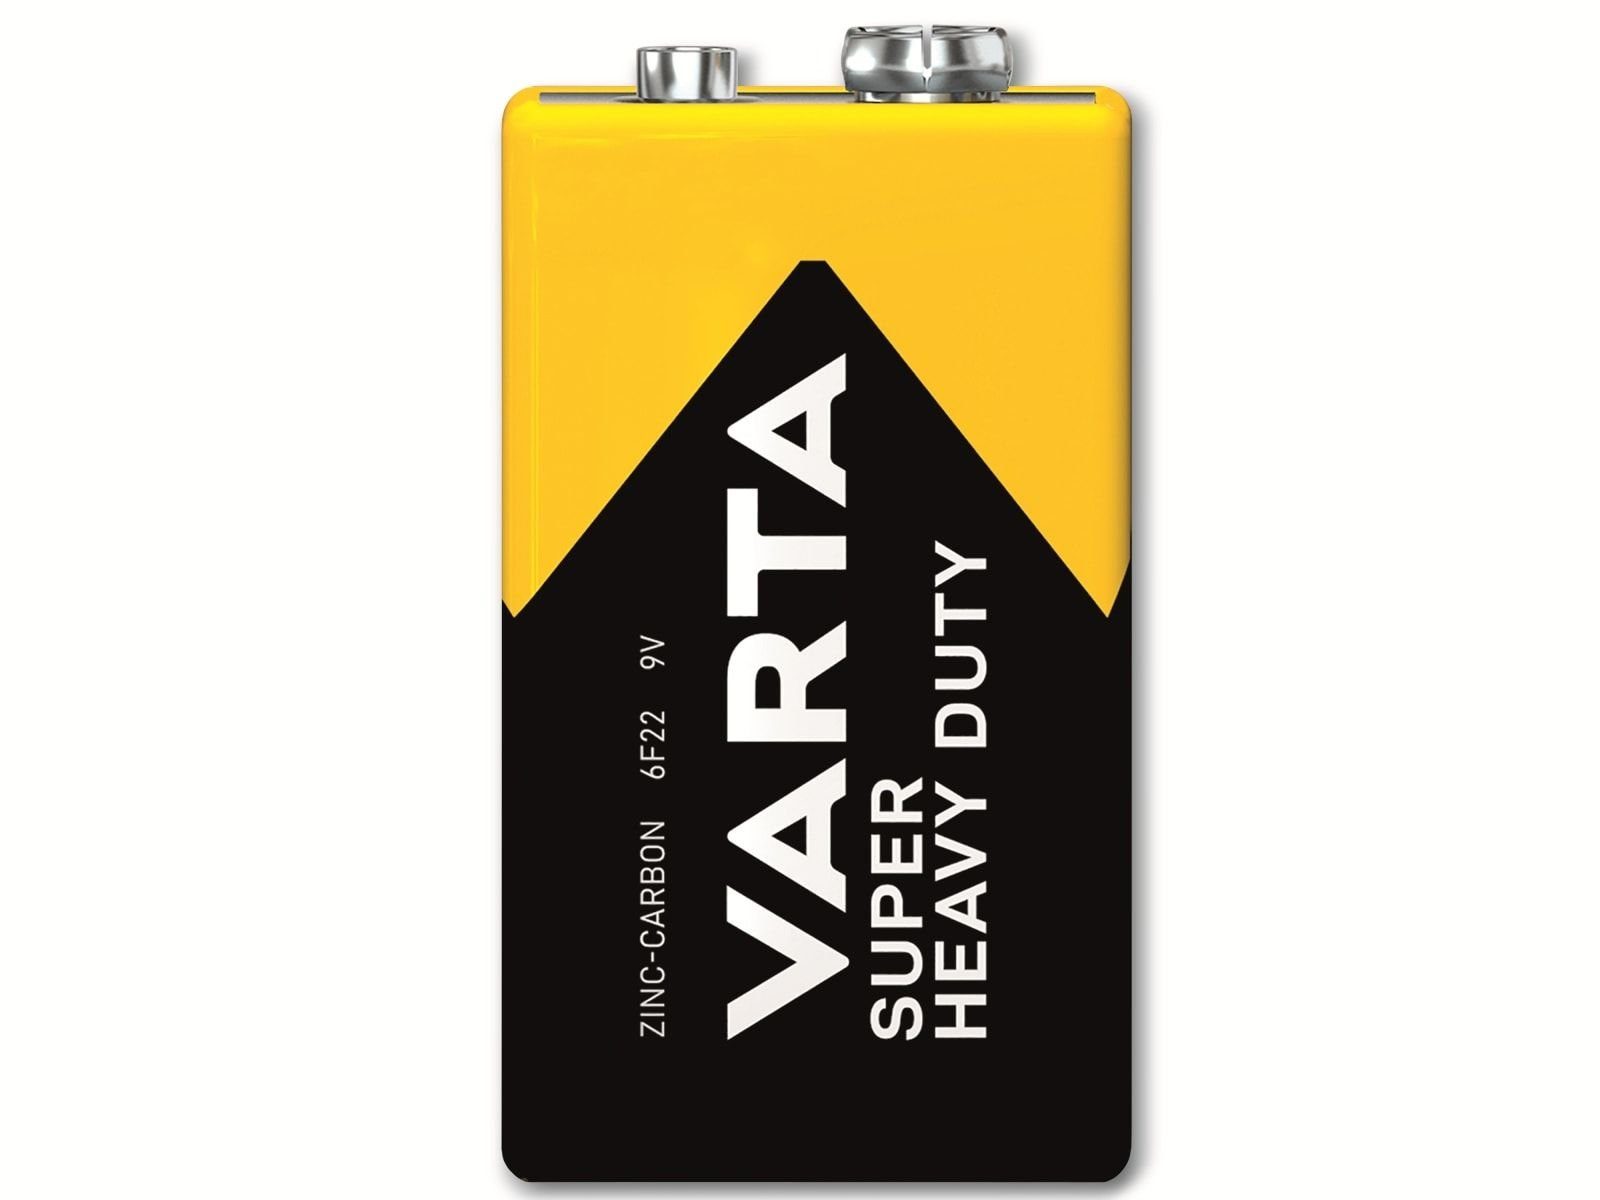 VARTA VARTA Batterie Zink-Kohle, E-Block, Batterie 9V 6F22